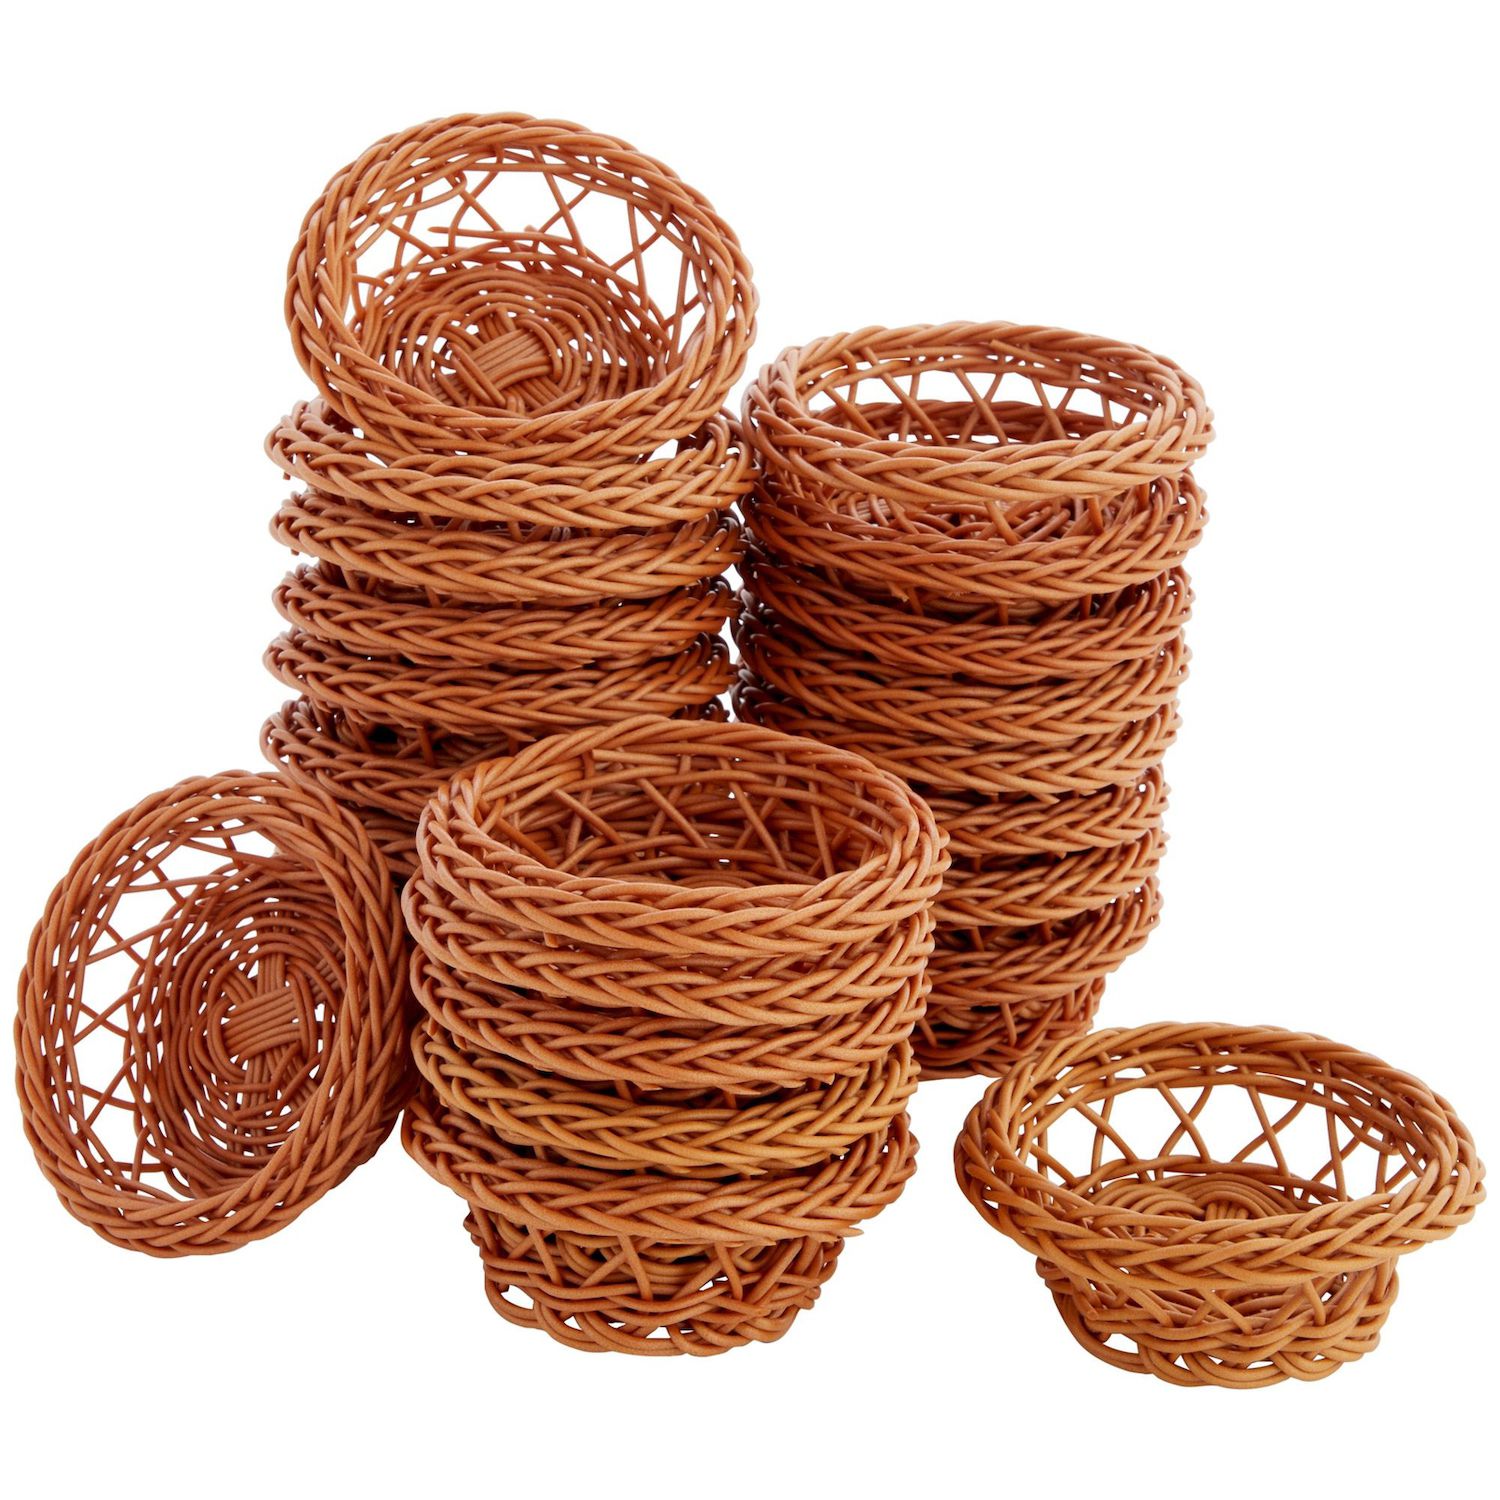 Juvale 2 Pack Small Rectangular Wicker Baskets For Shelves, 6 Inch